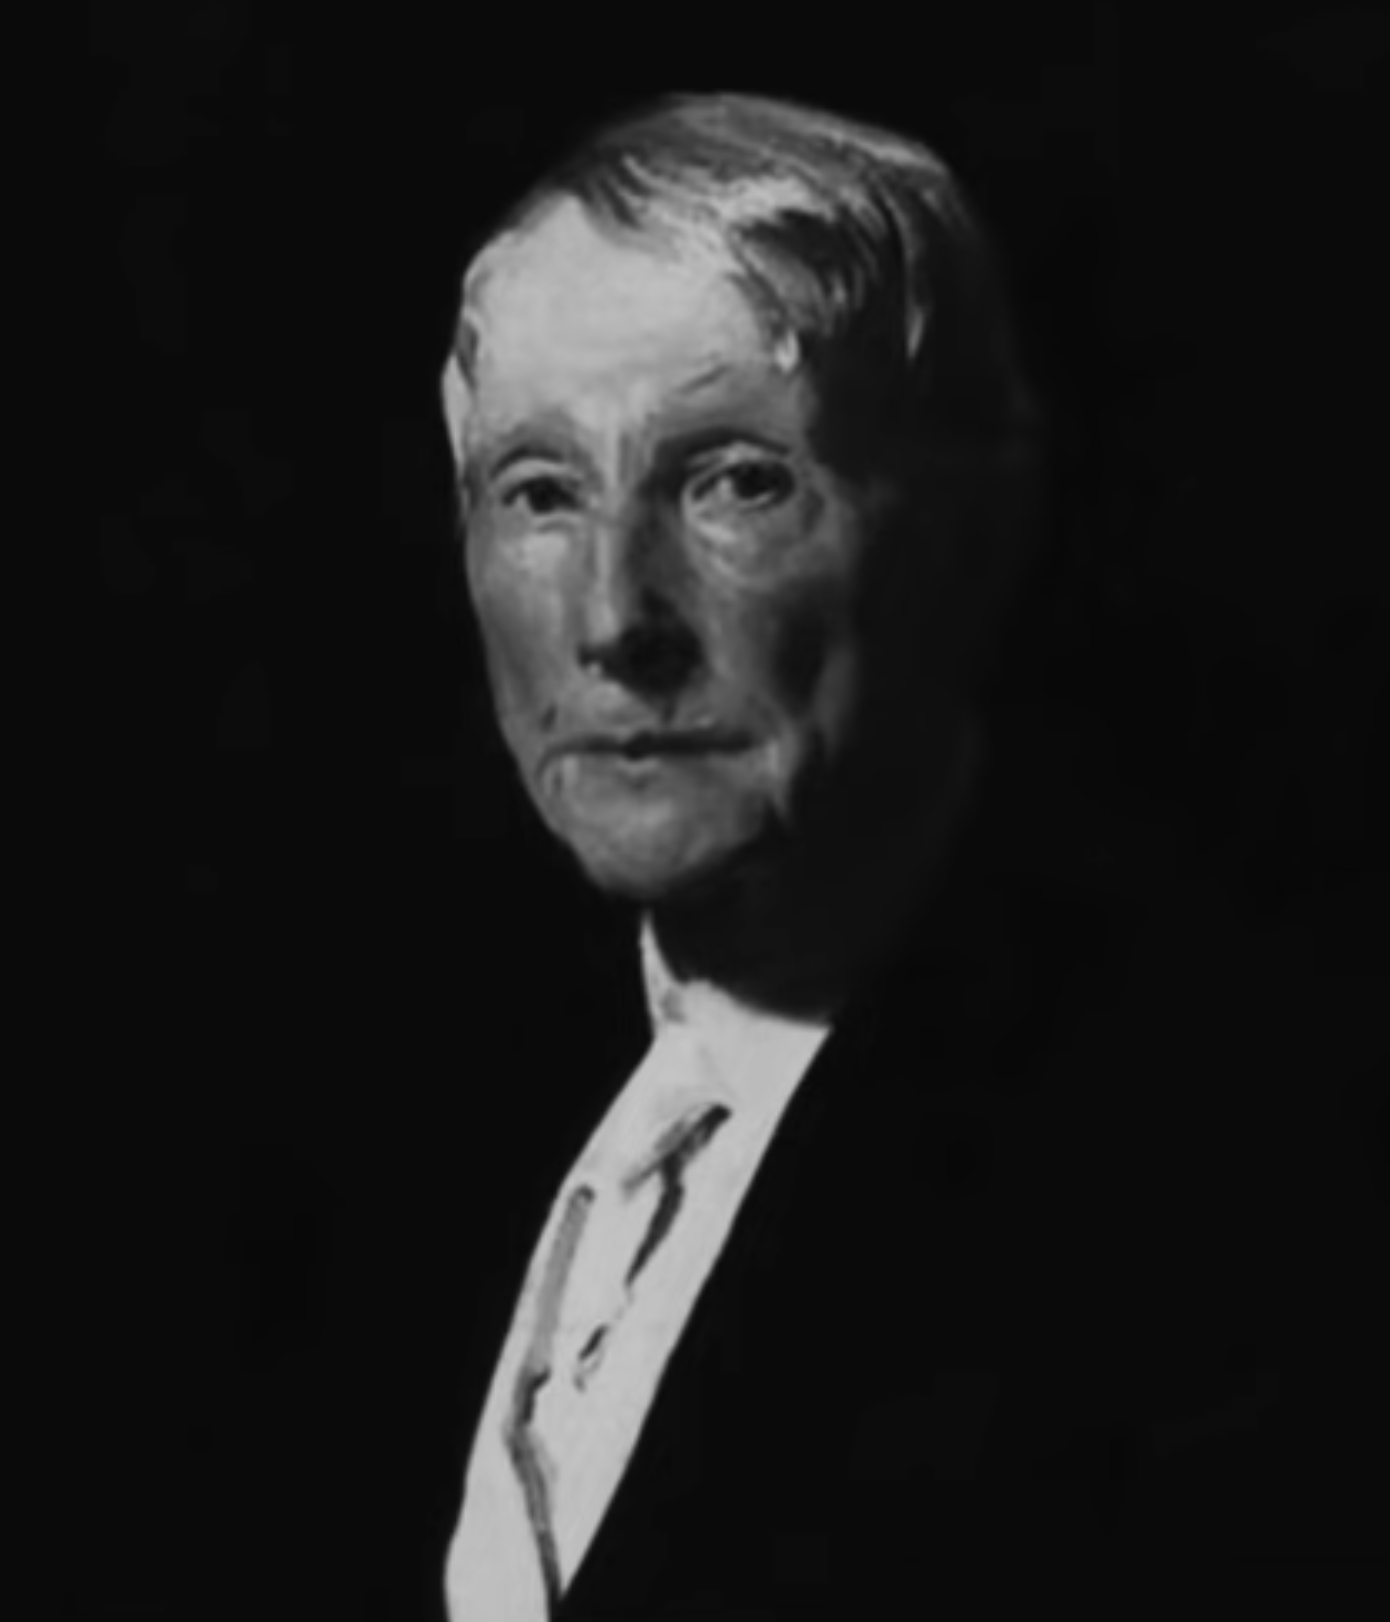 John D. Rockefeller  Smithsonian Institution